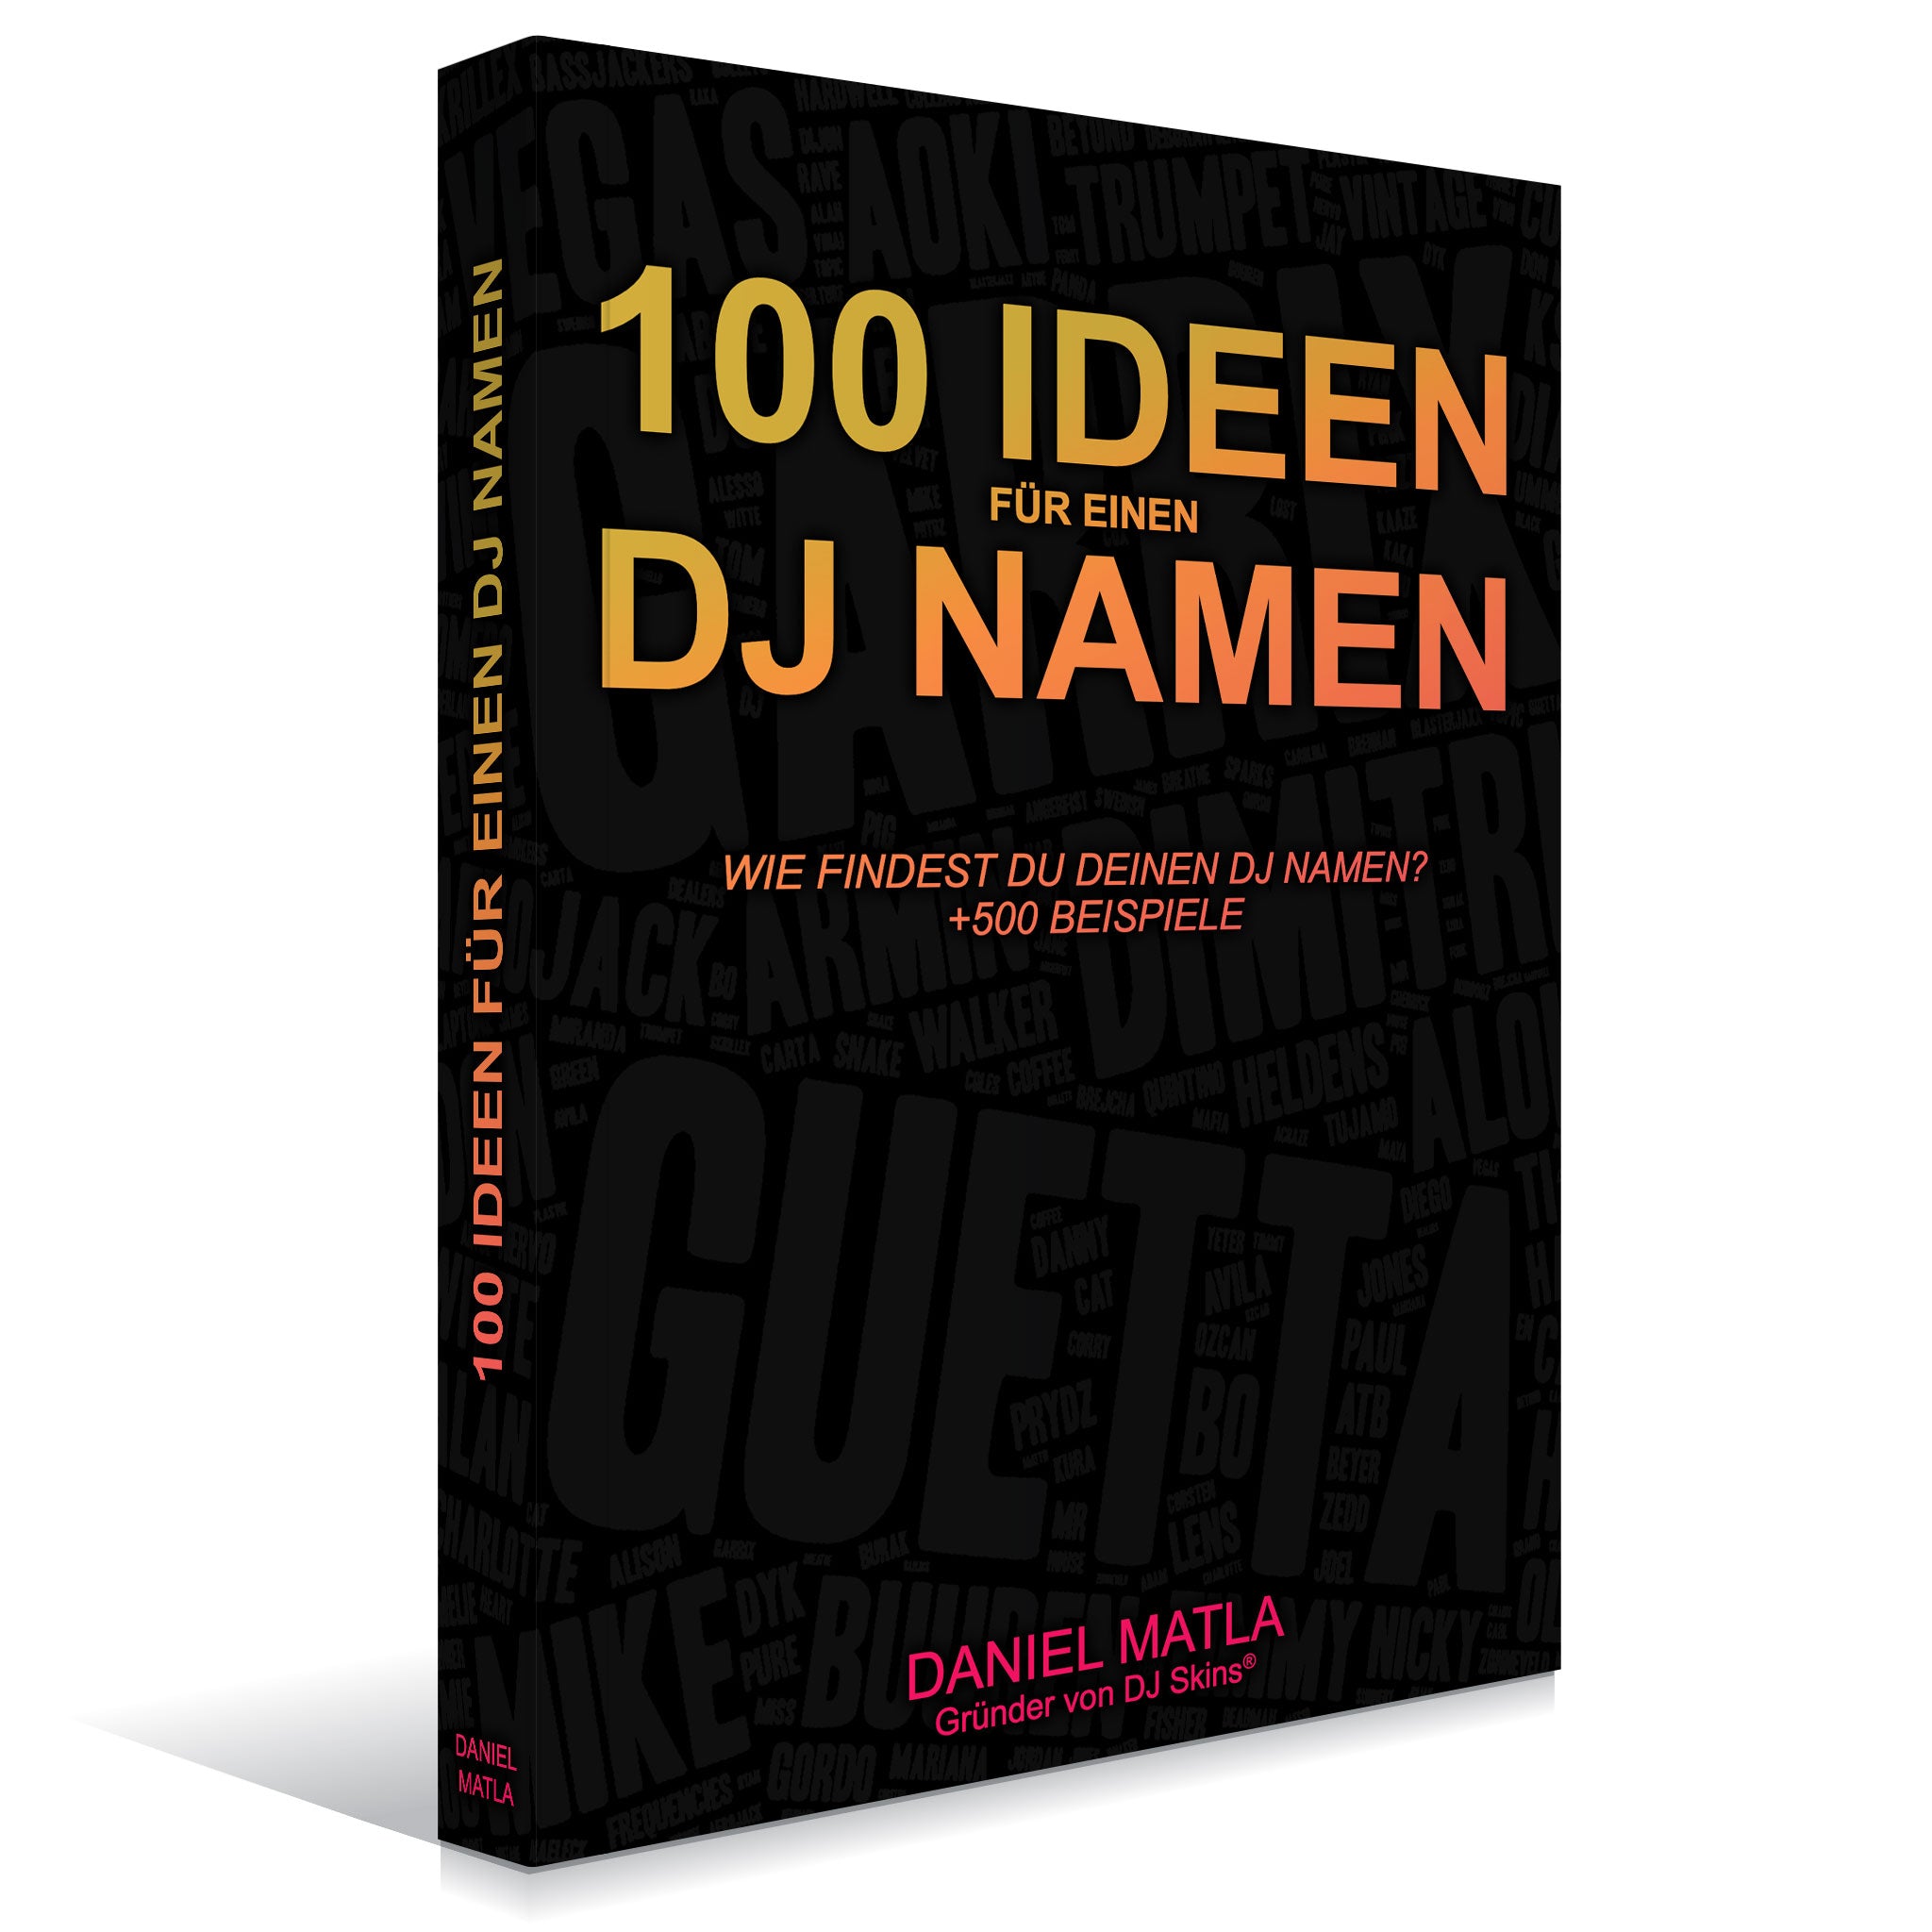 100 Ideen für einen DJ Namen (e-Book) - ab dem 6.12. erhältlich